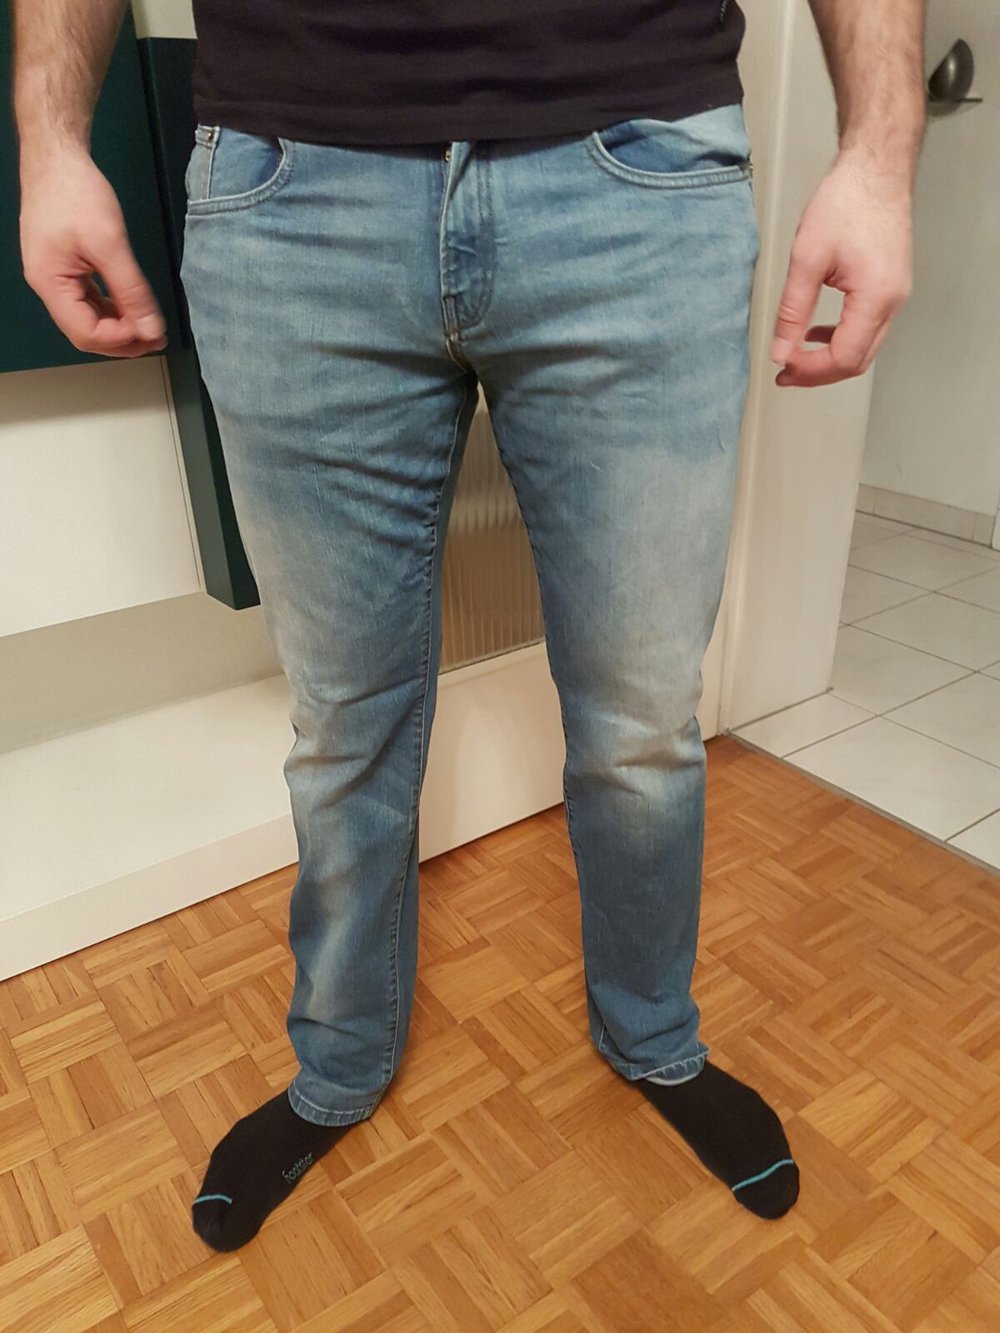 Jeans von Esprit, Große Grösse (36x36)